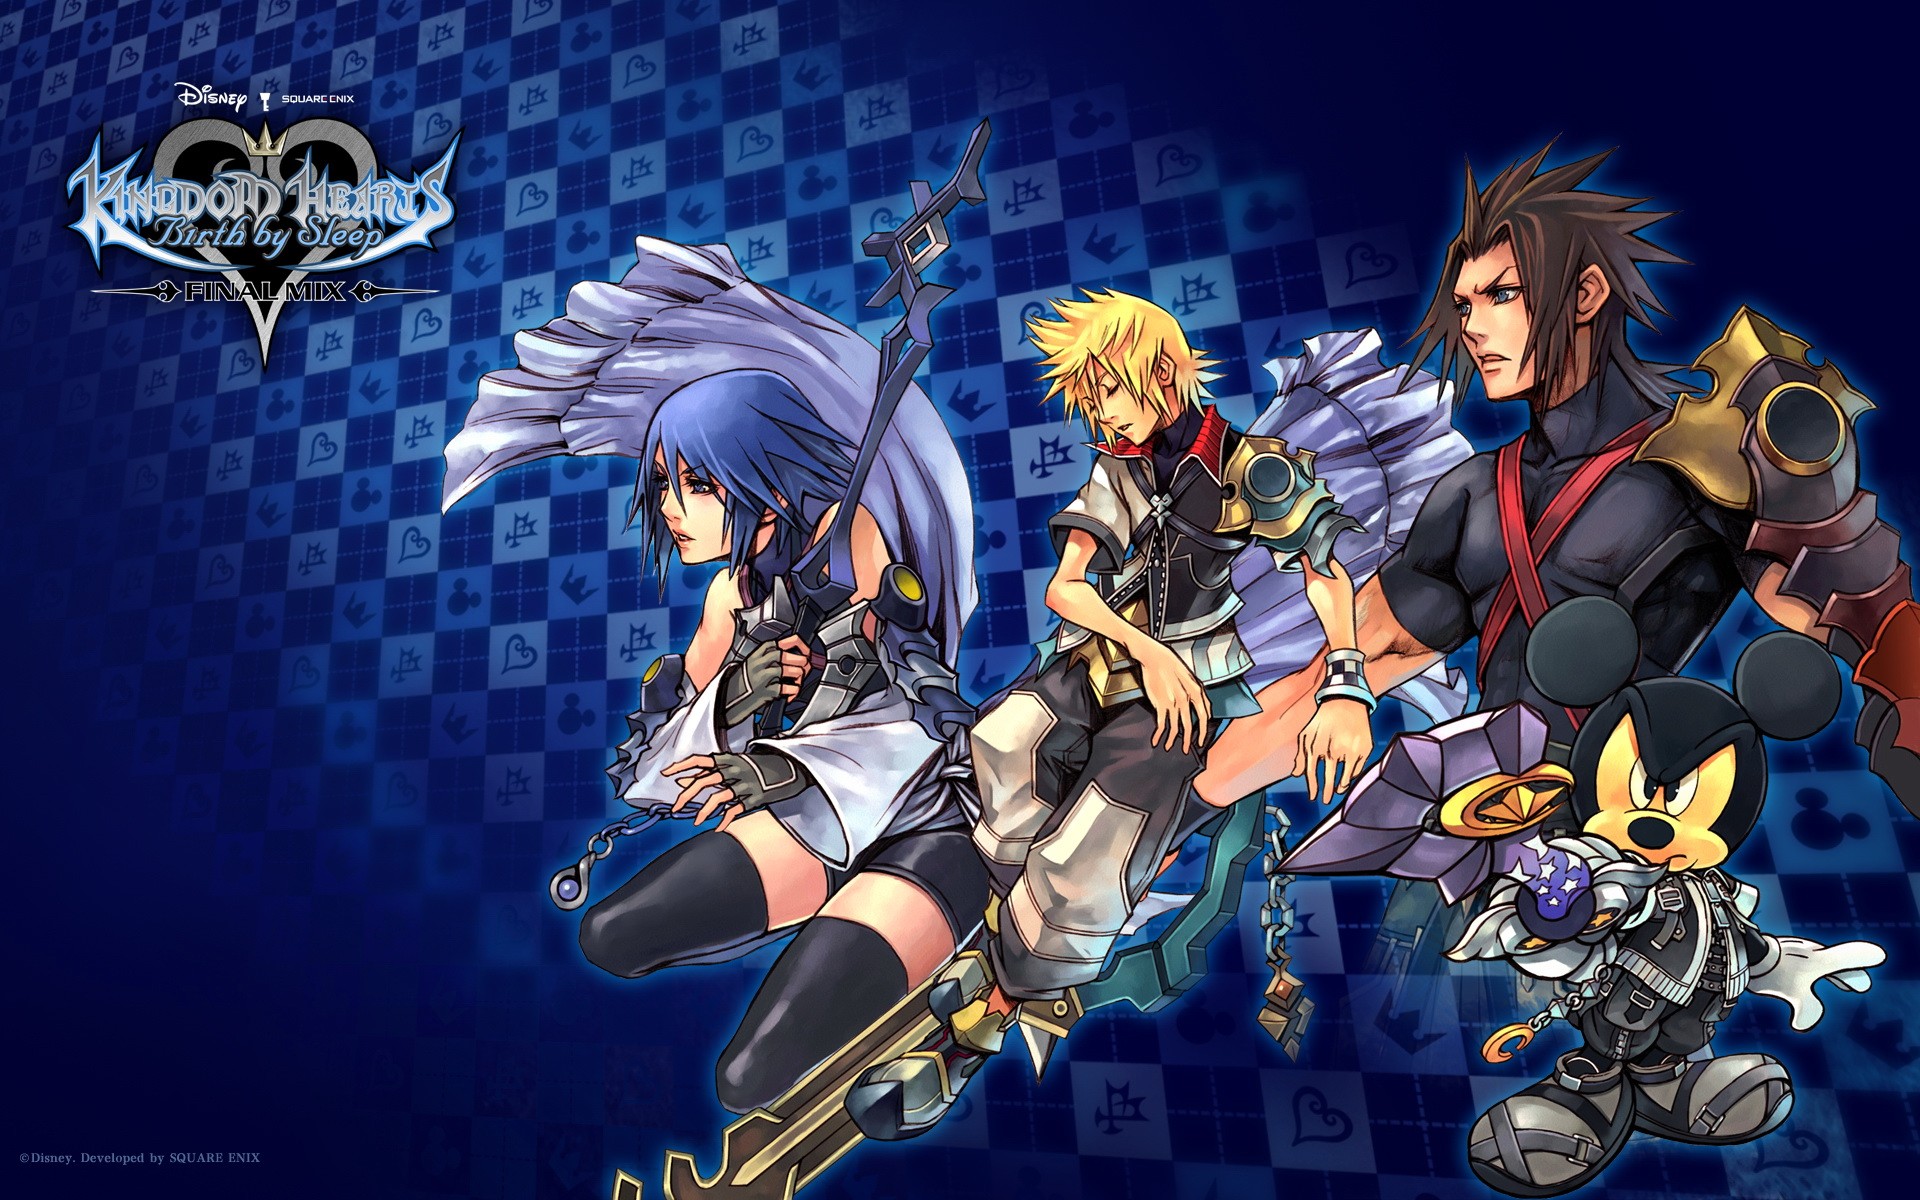  Kingdom Hearts 2  wallpaper   Download free stunning HD 